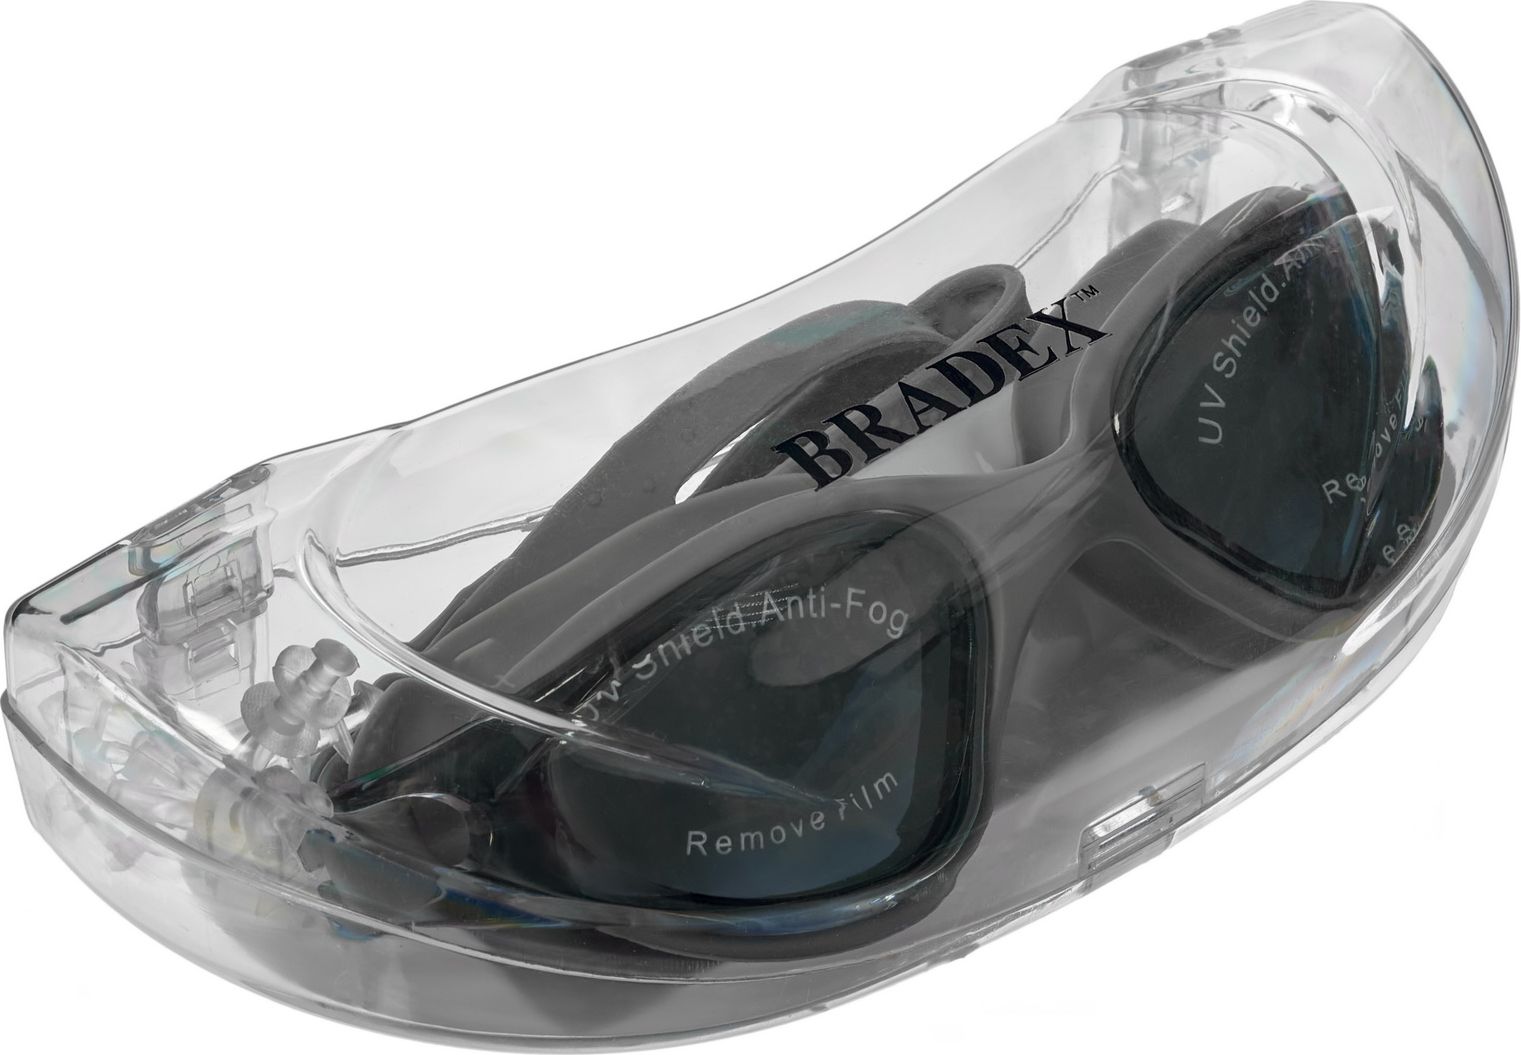 Очки для плавания Bradex, серия «Комфорт», серый, цвет линзы-серый